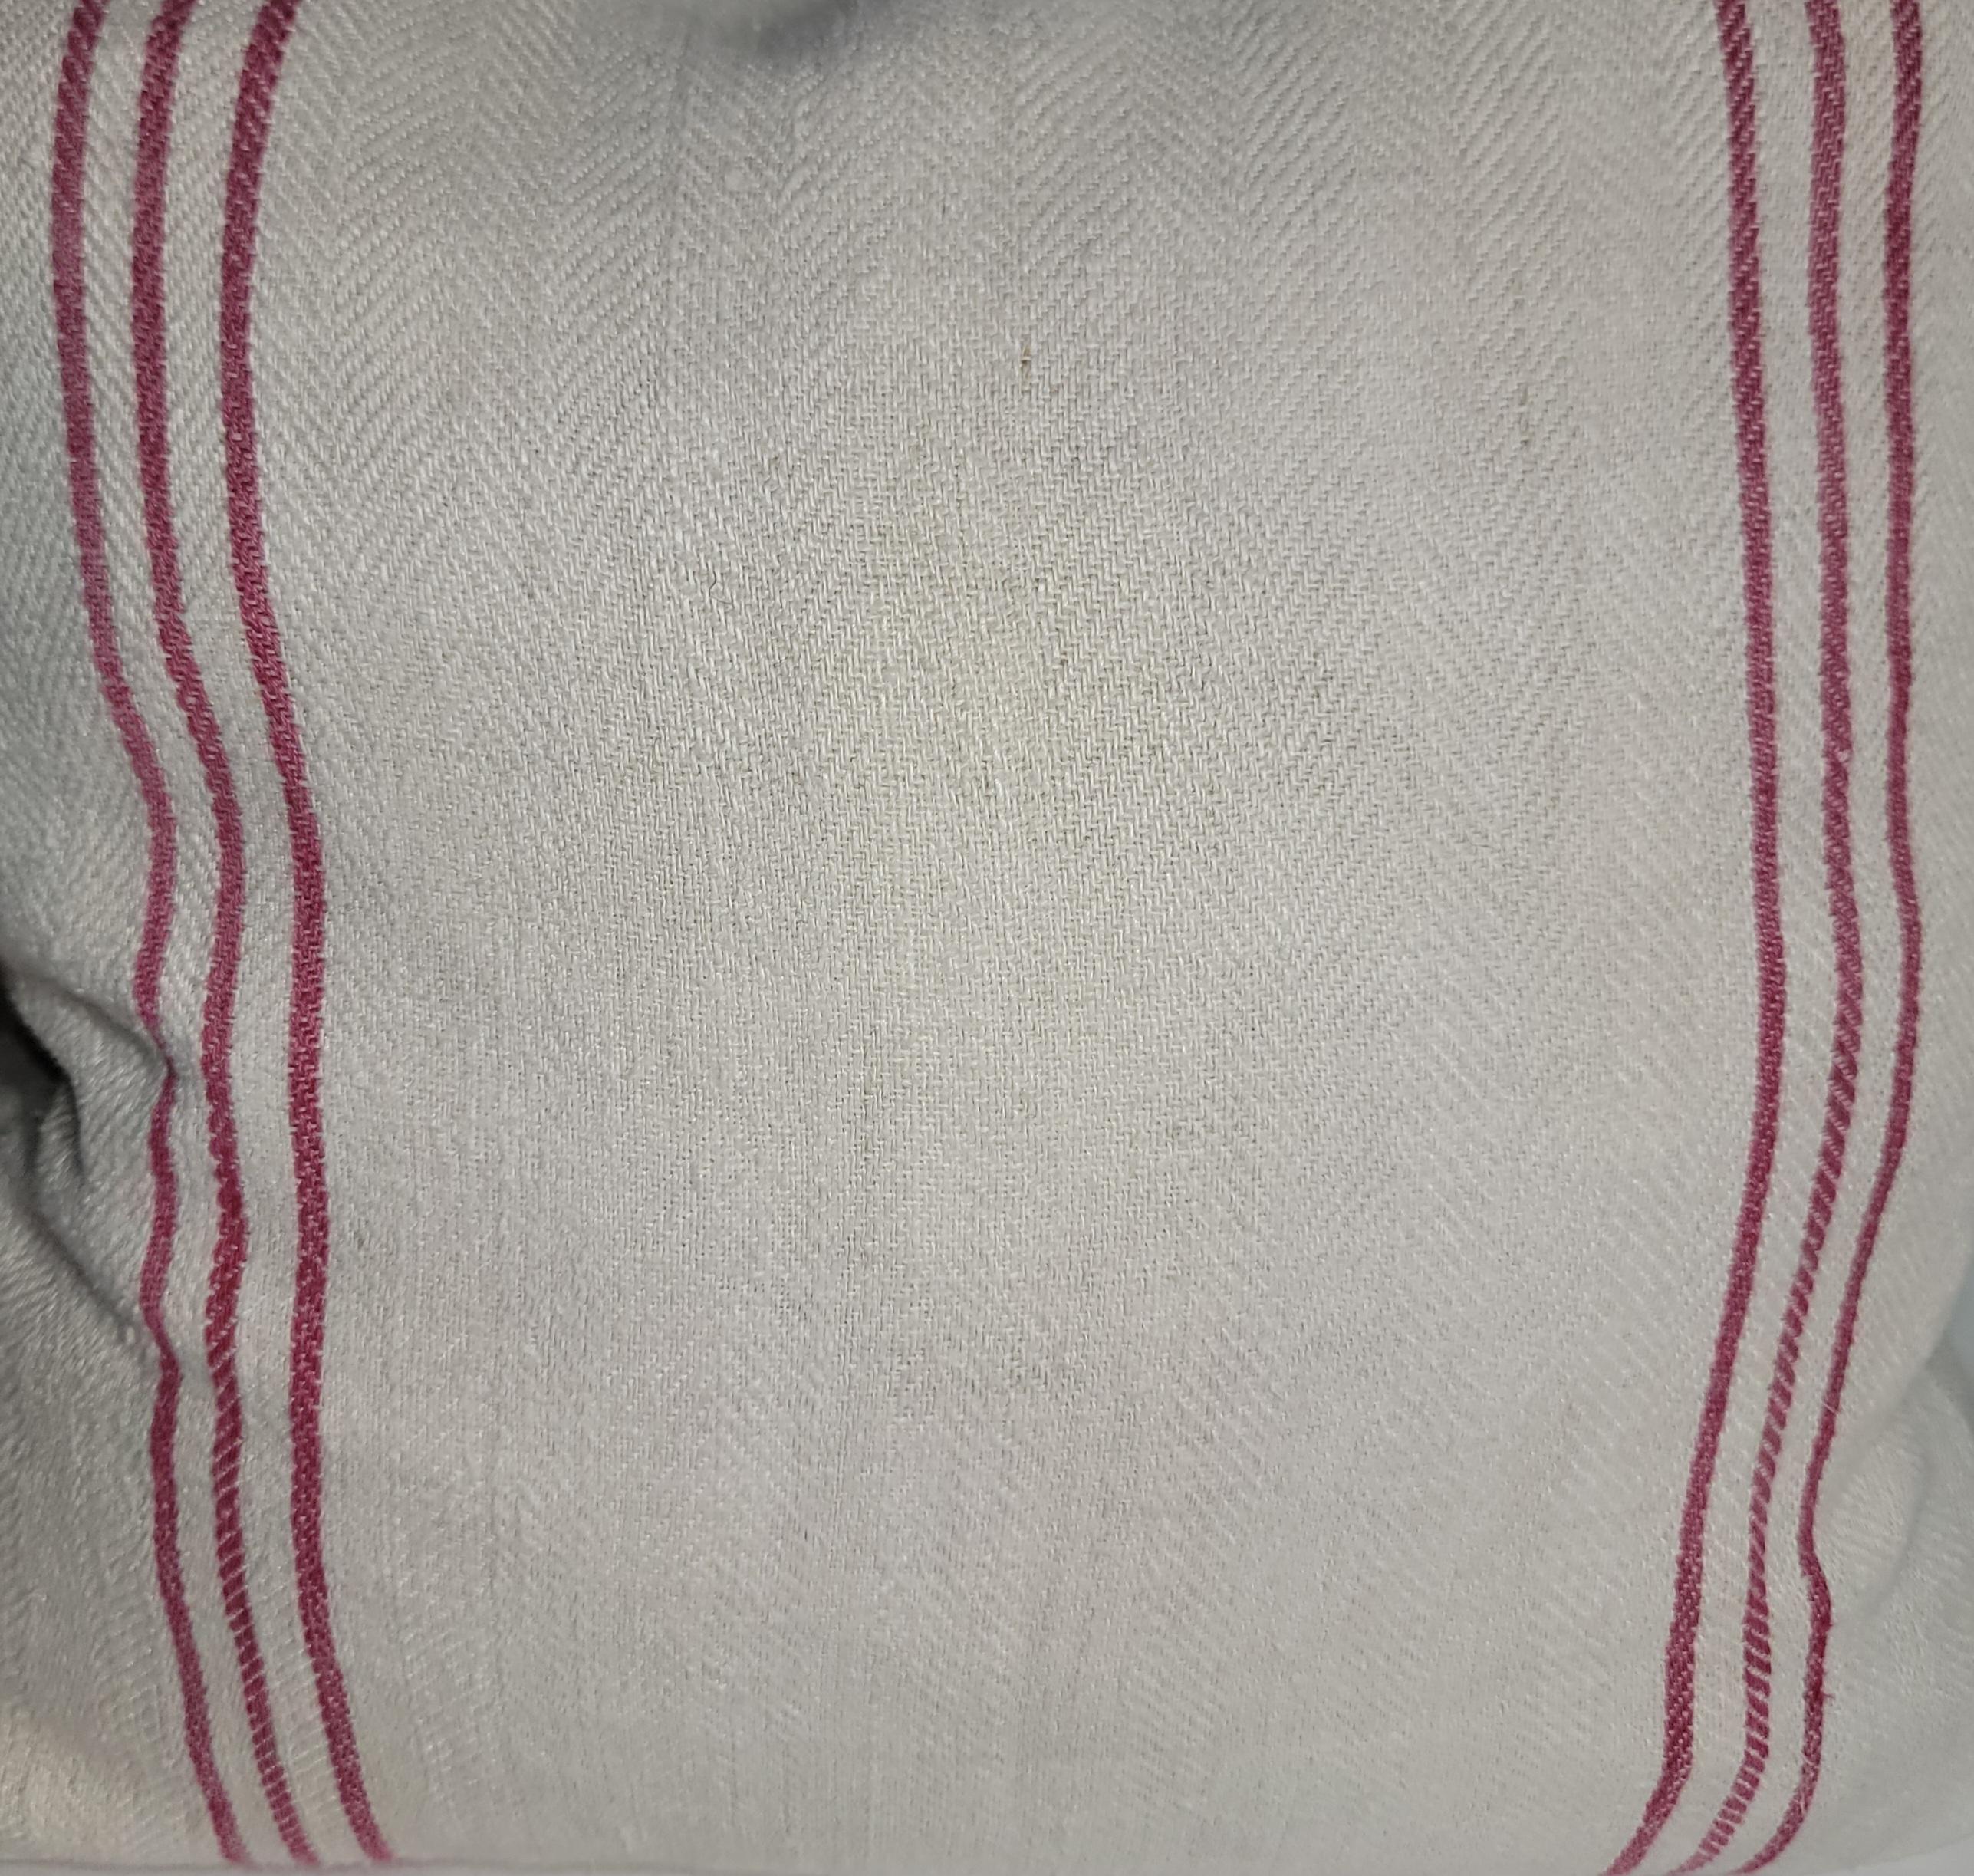 19thc Gestreifte Baumwolle Leinen Doppelseitige Kissen. Dieses schöne Leinen hat einfache rote Linien auf einer Seite des Kissens, die sehr attraktiv sind, und die Rückseite ist ein einfaches Leinen. Die Bettwäsche wurde professionell gewaschen und